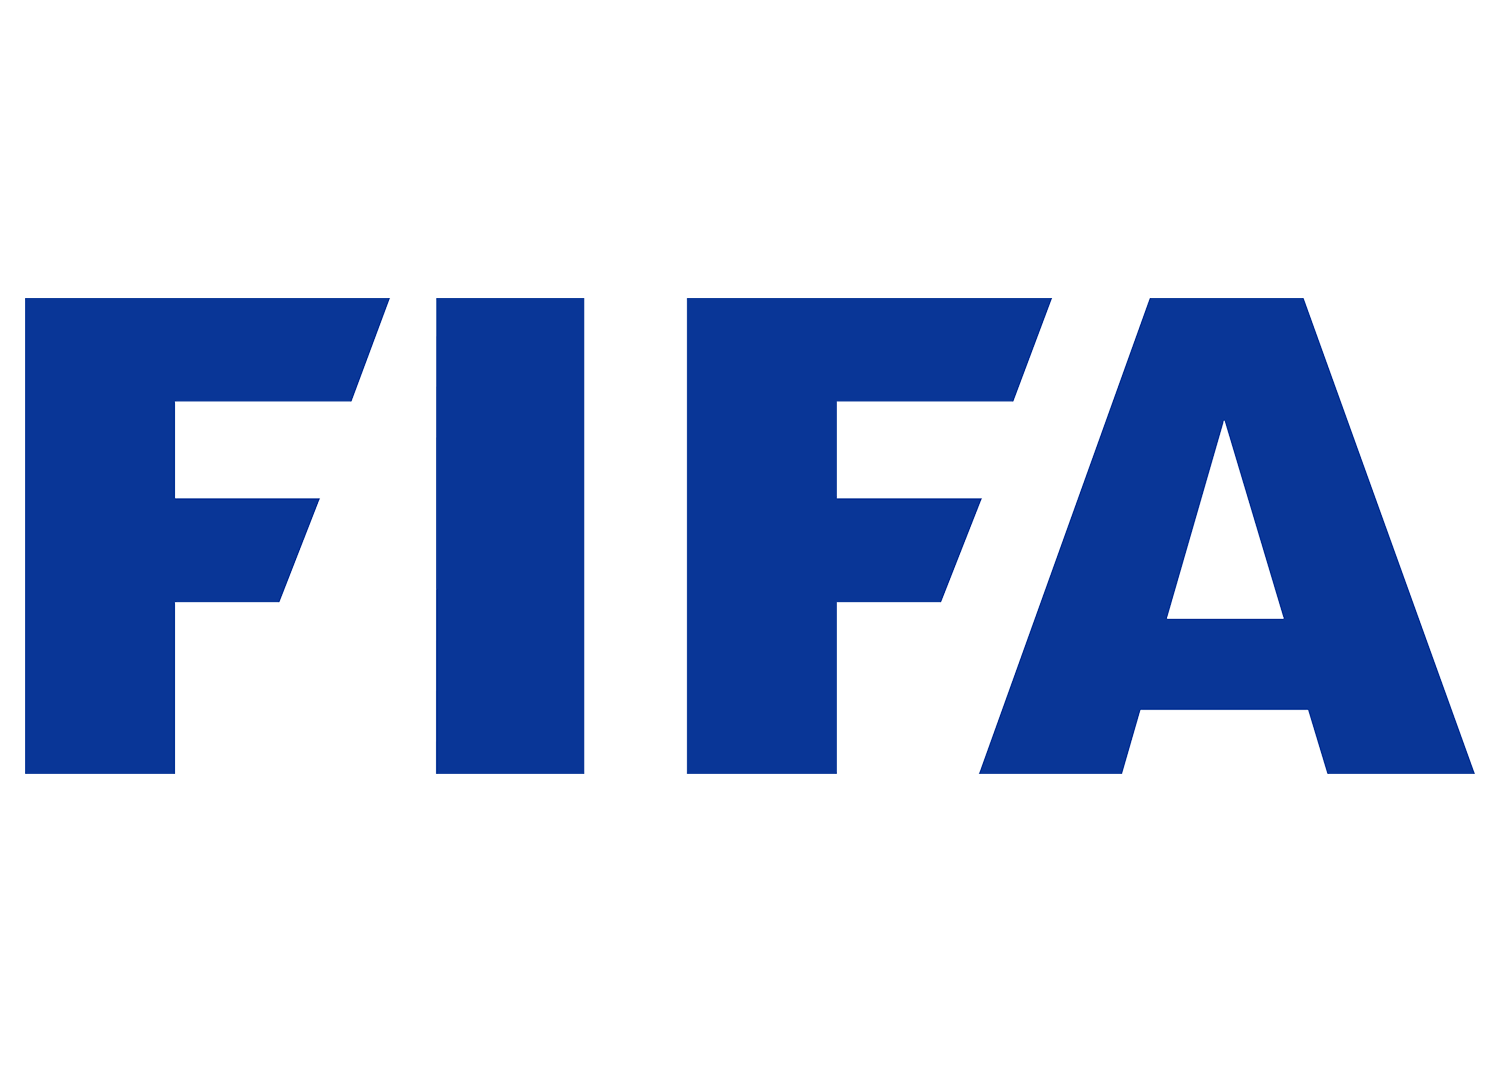 FIFA logosu